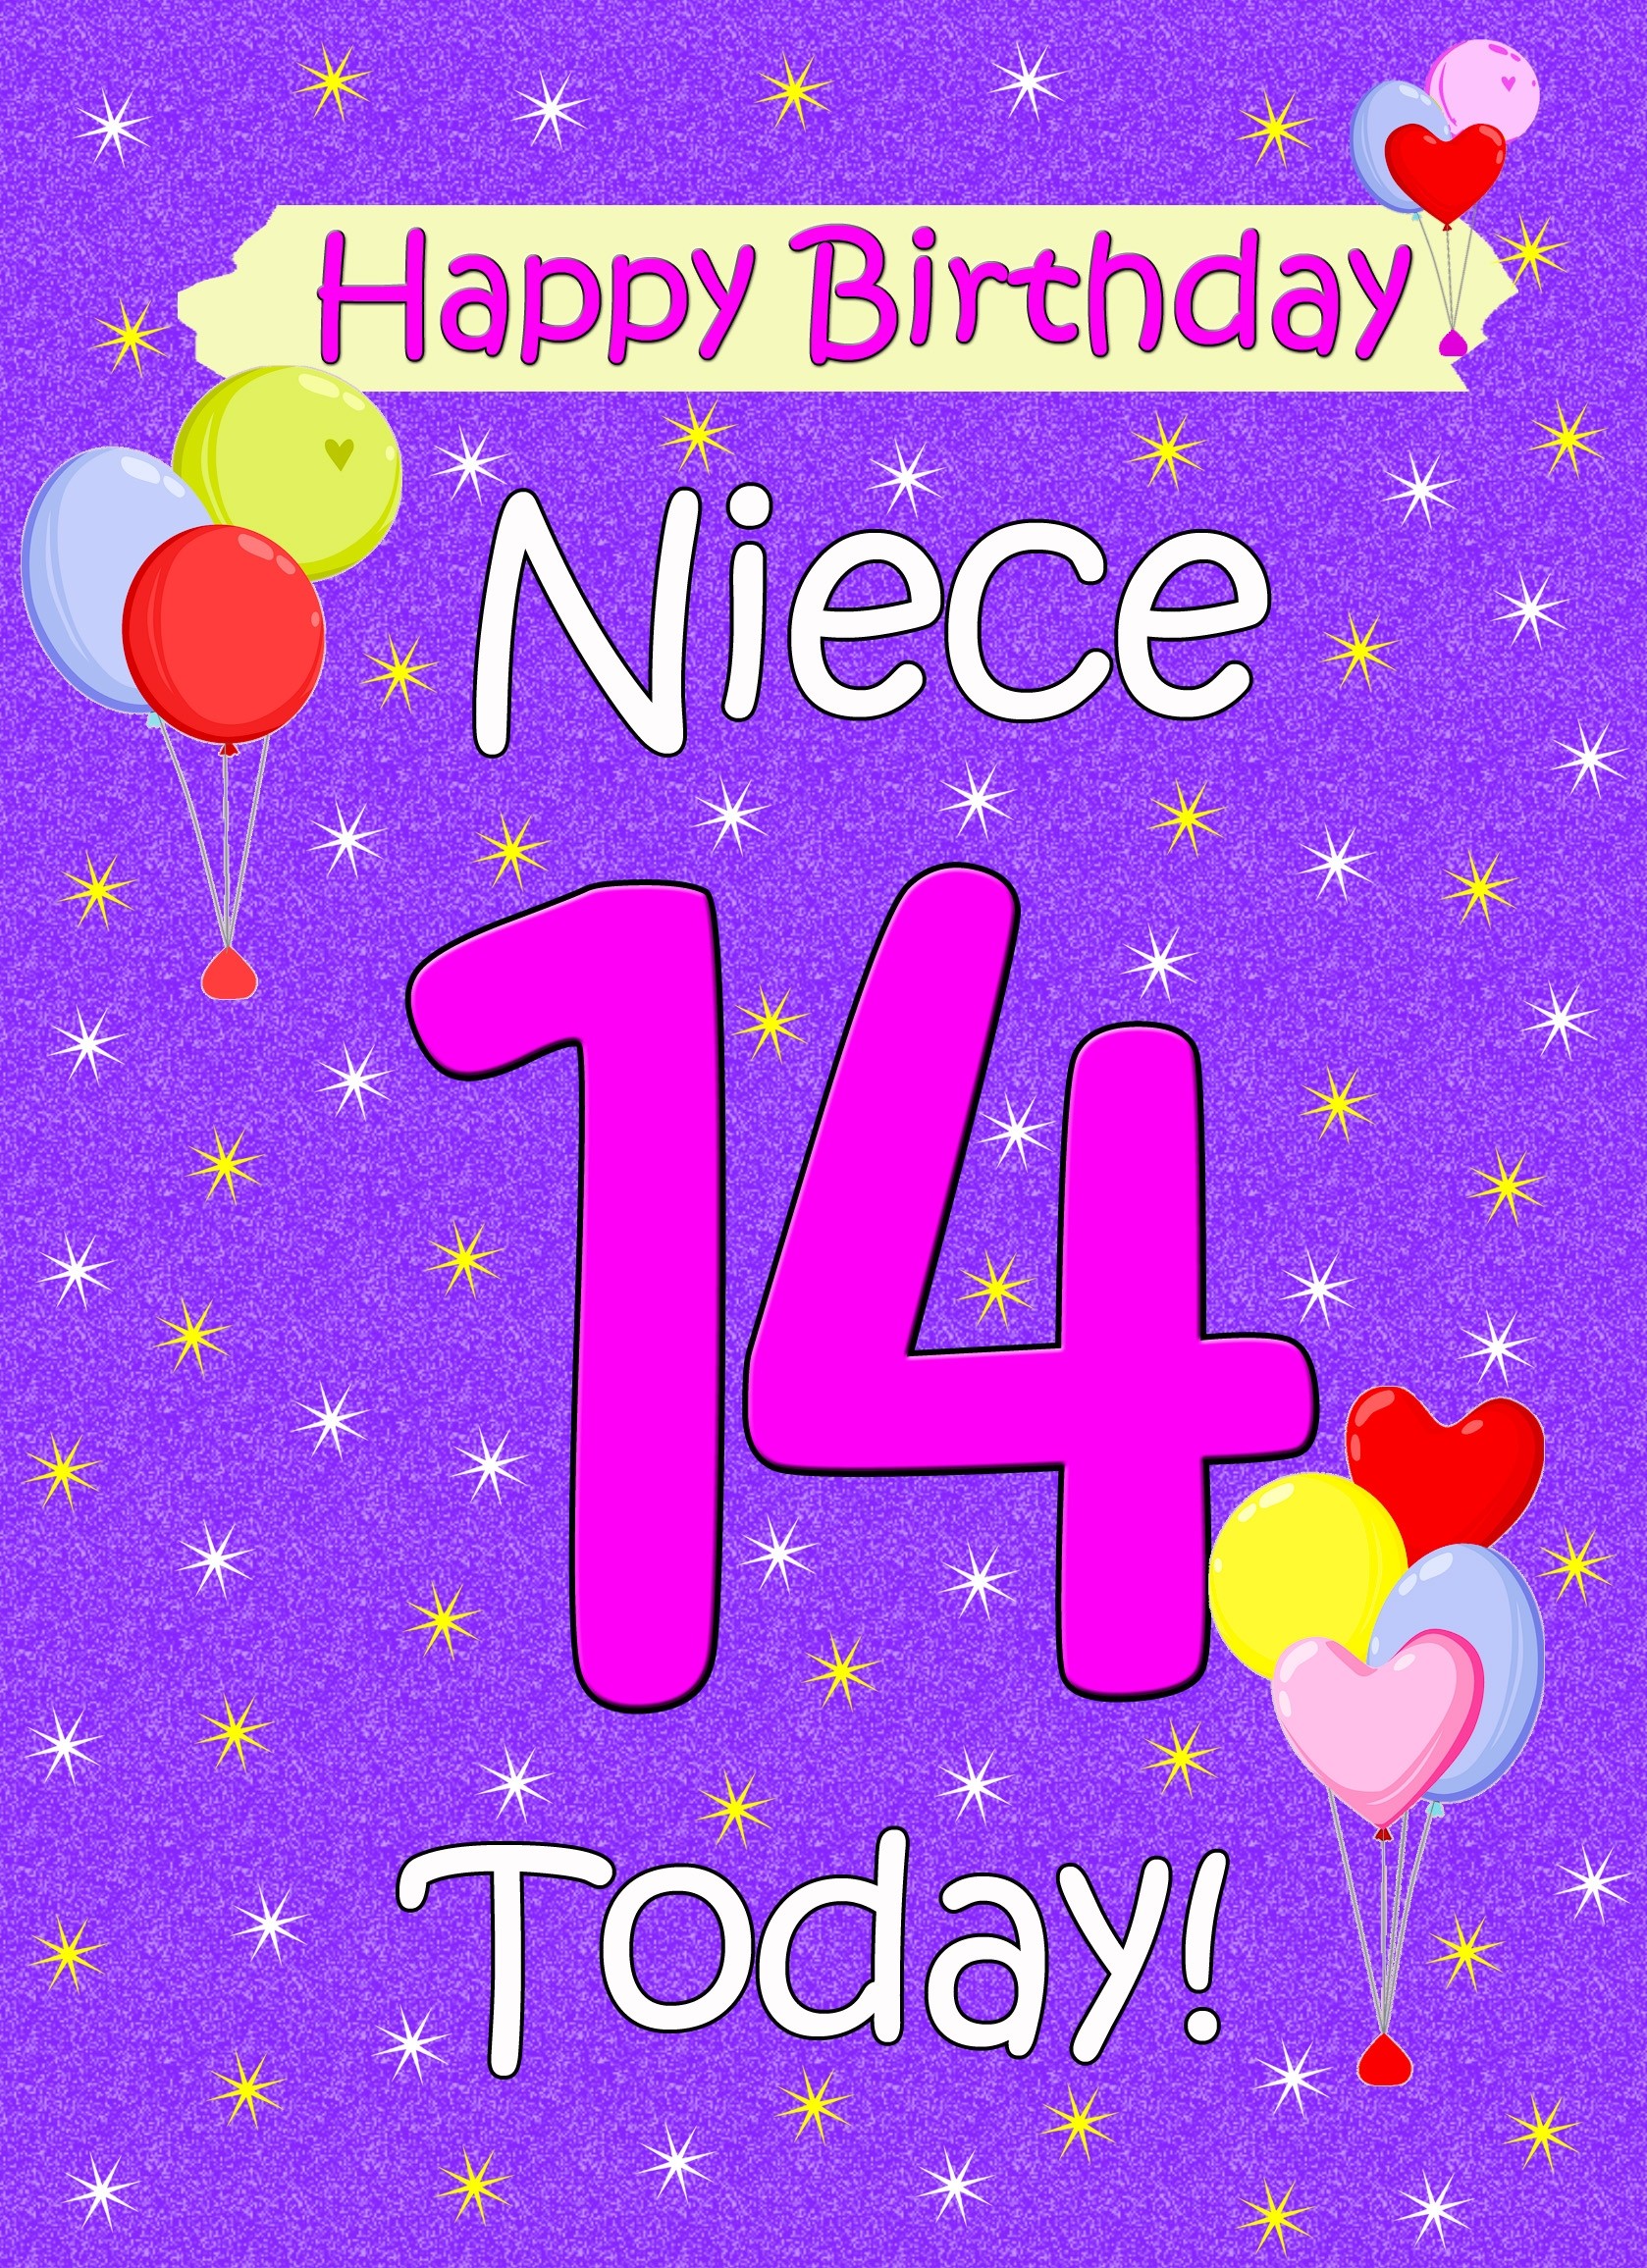 Niece 14th Birthday Card (Lilac)